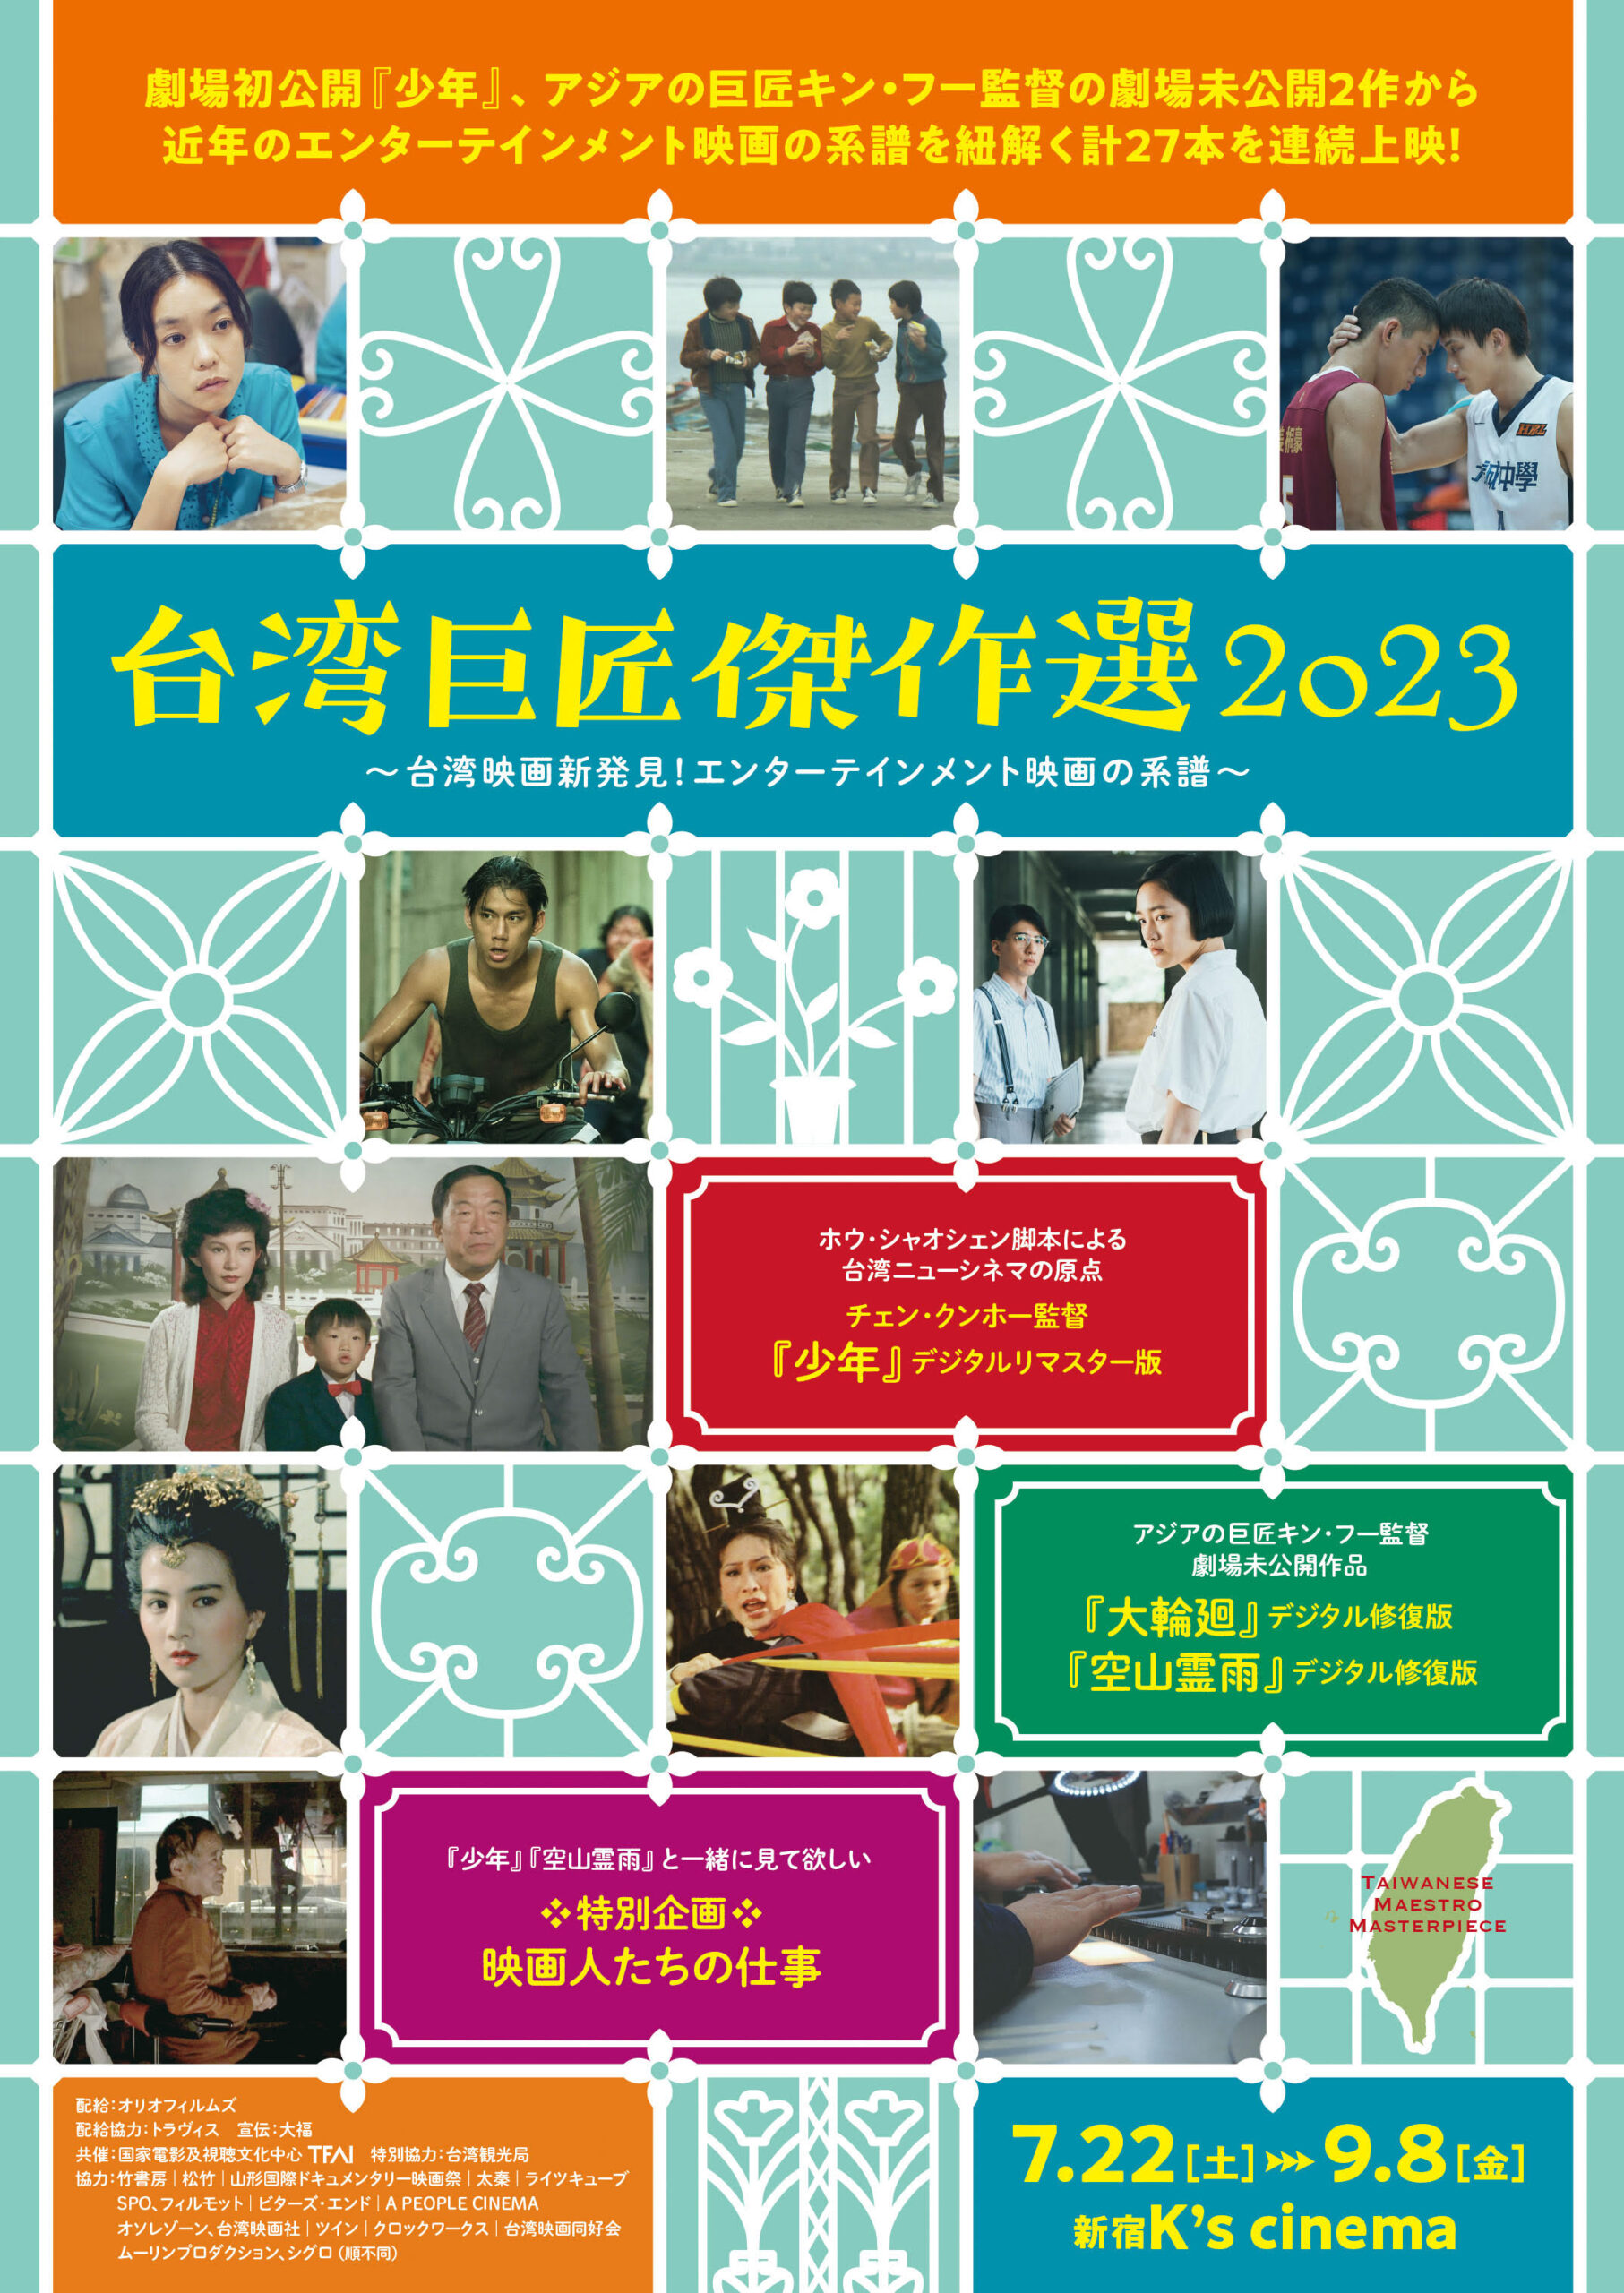 『コーダ あいのうた』『ソニータ』など10作品を上映「大丸有SDGs映画祭2022」8月30日より開催